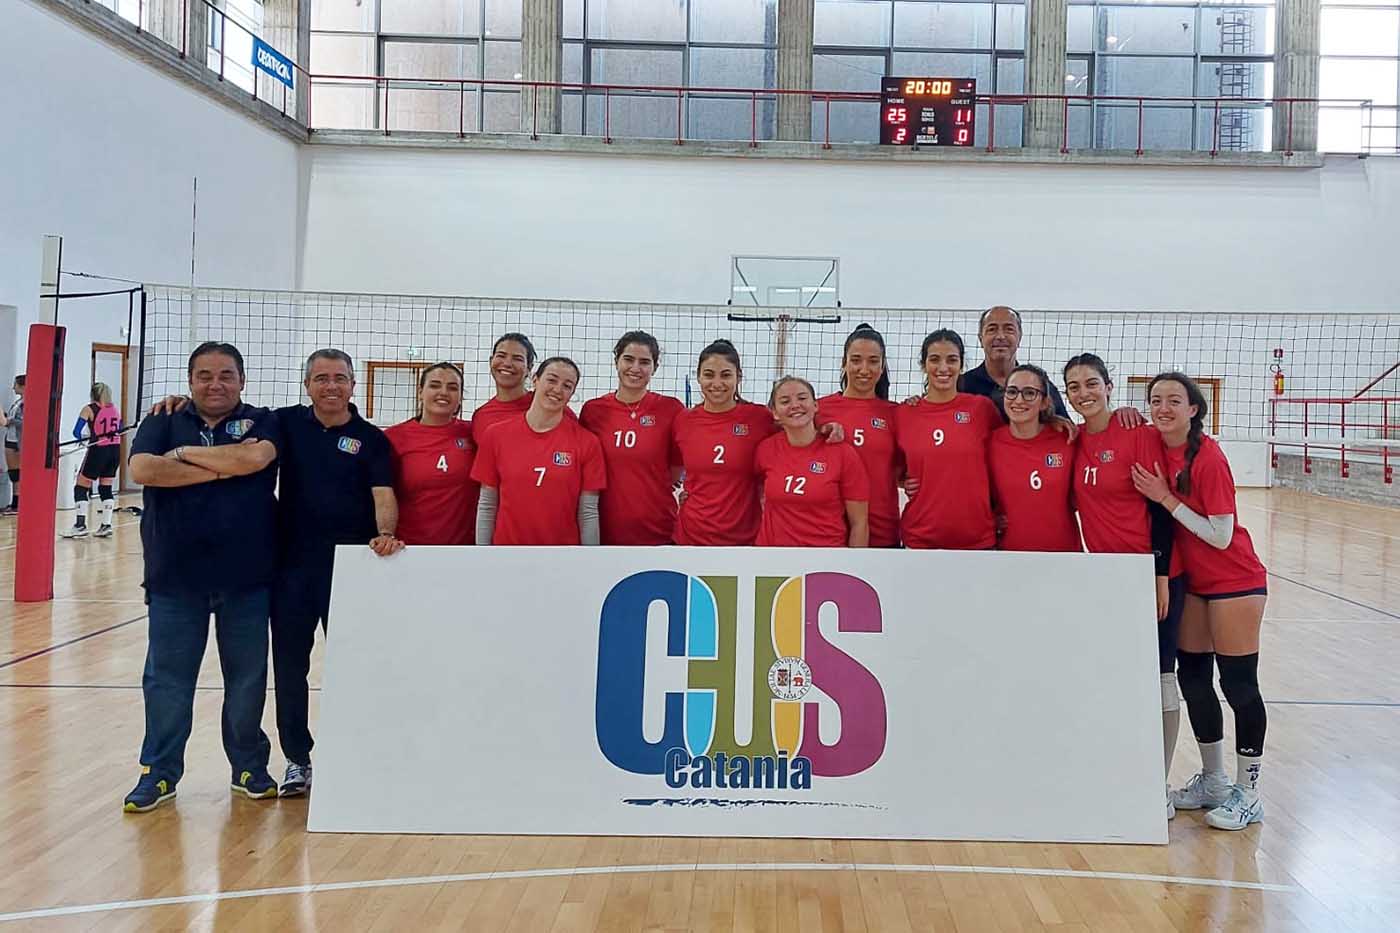 la squadra del cus catania di volley femminile